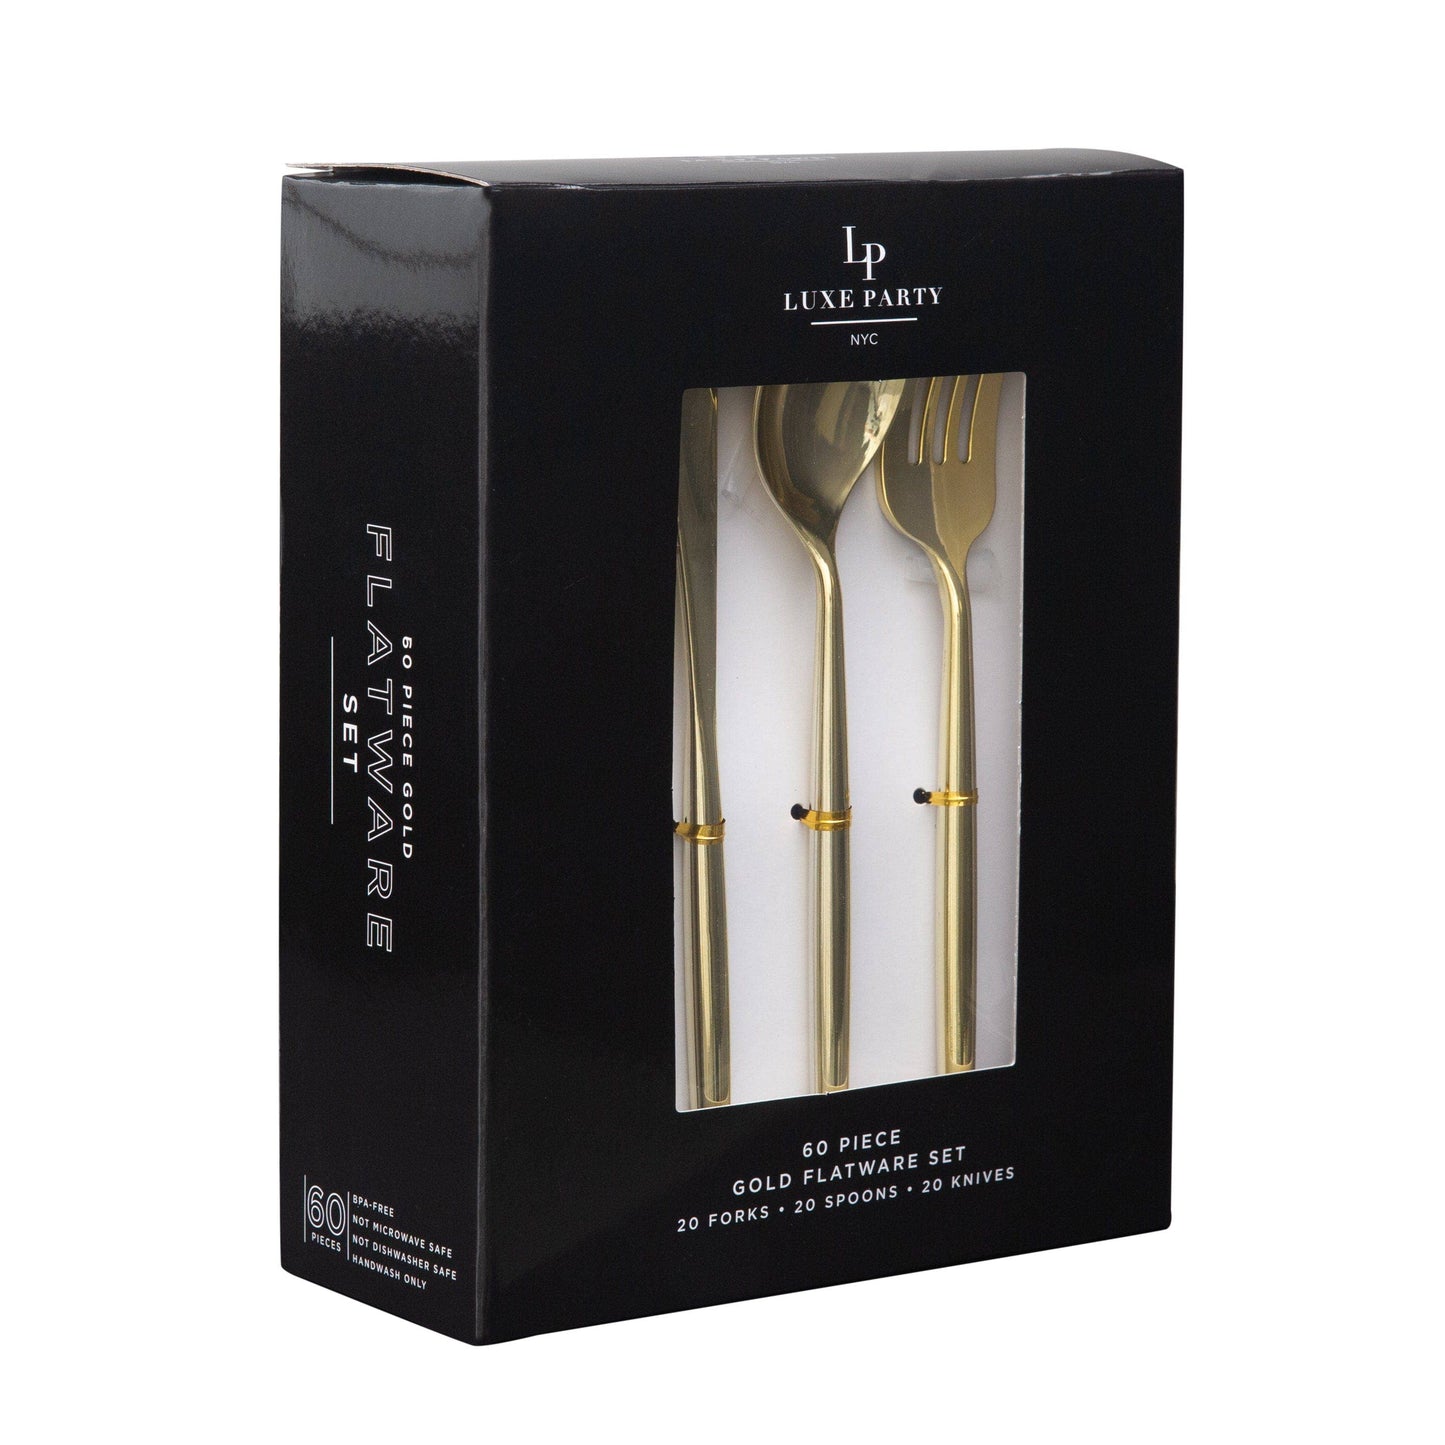 Matrix Gold Plastic Cutlery Set (60 Pieces)